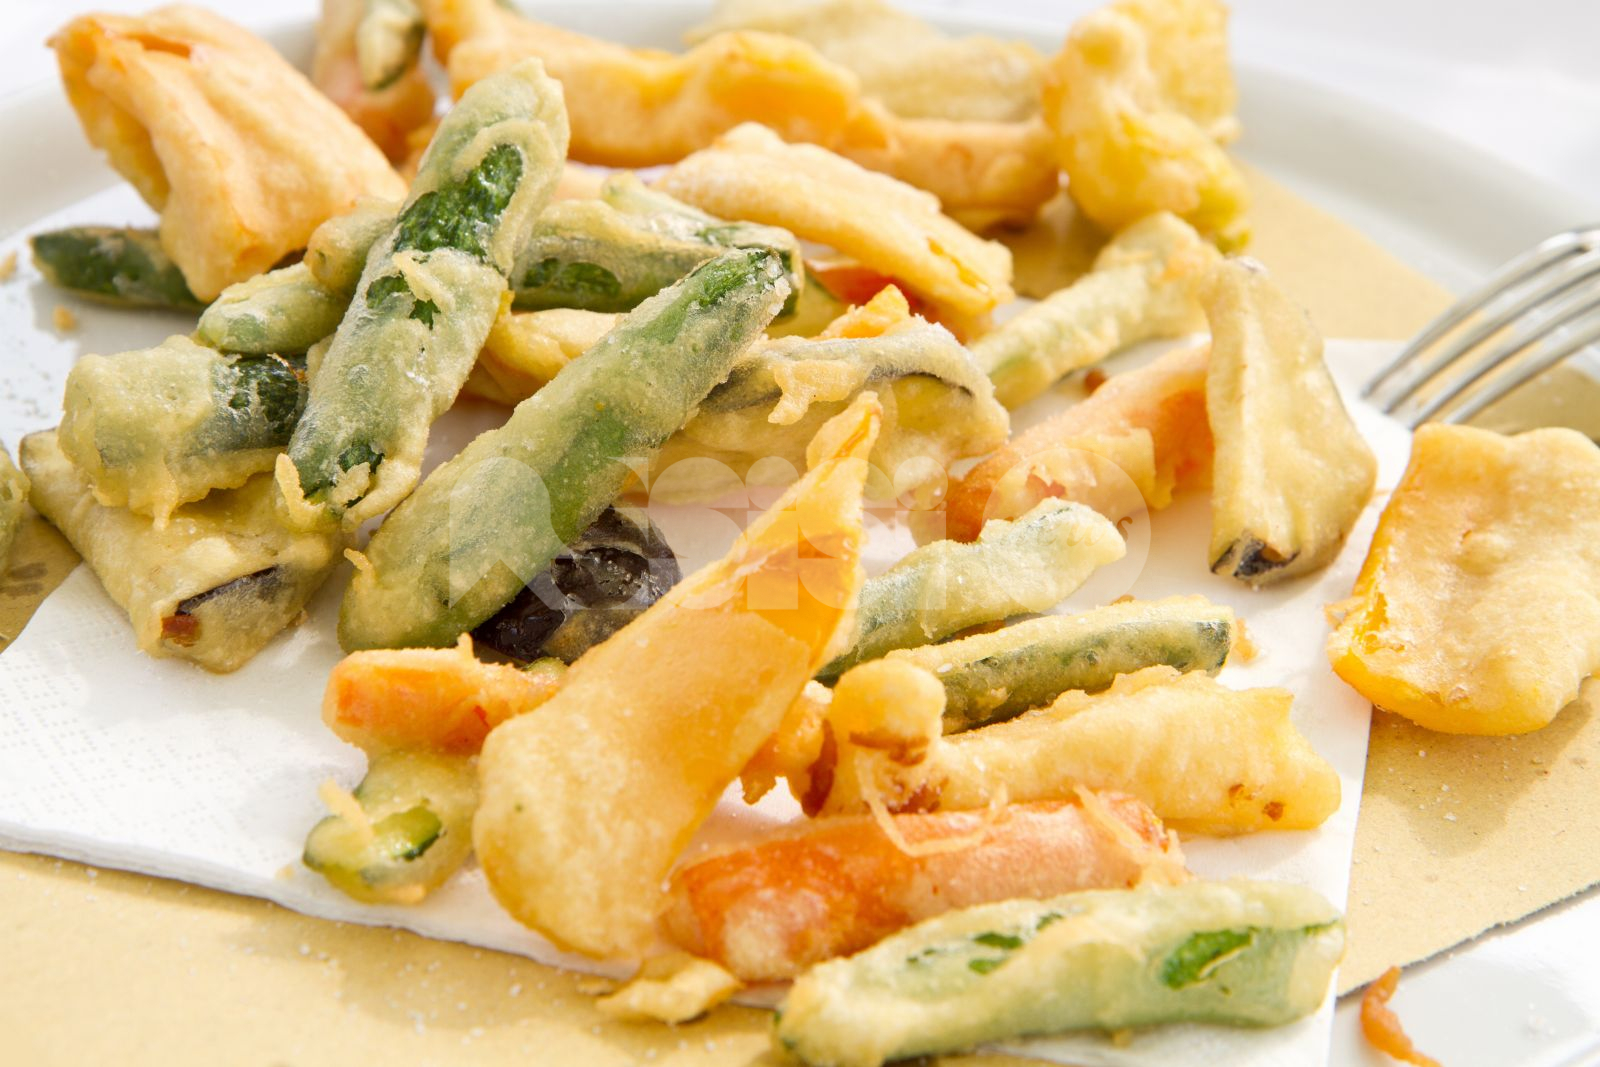 Fritto misto di verdure all'italiana, ingredienti e preparazione